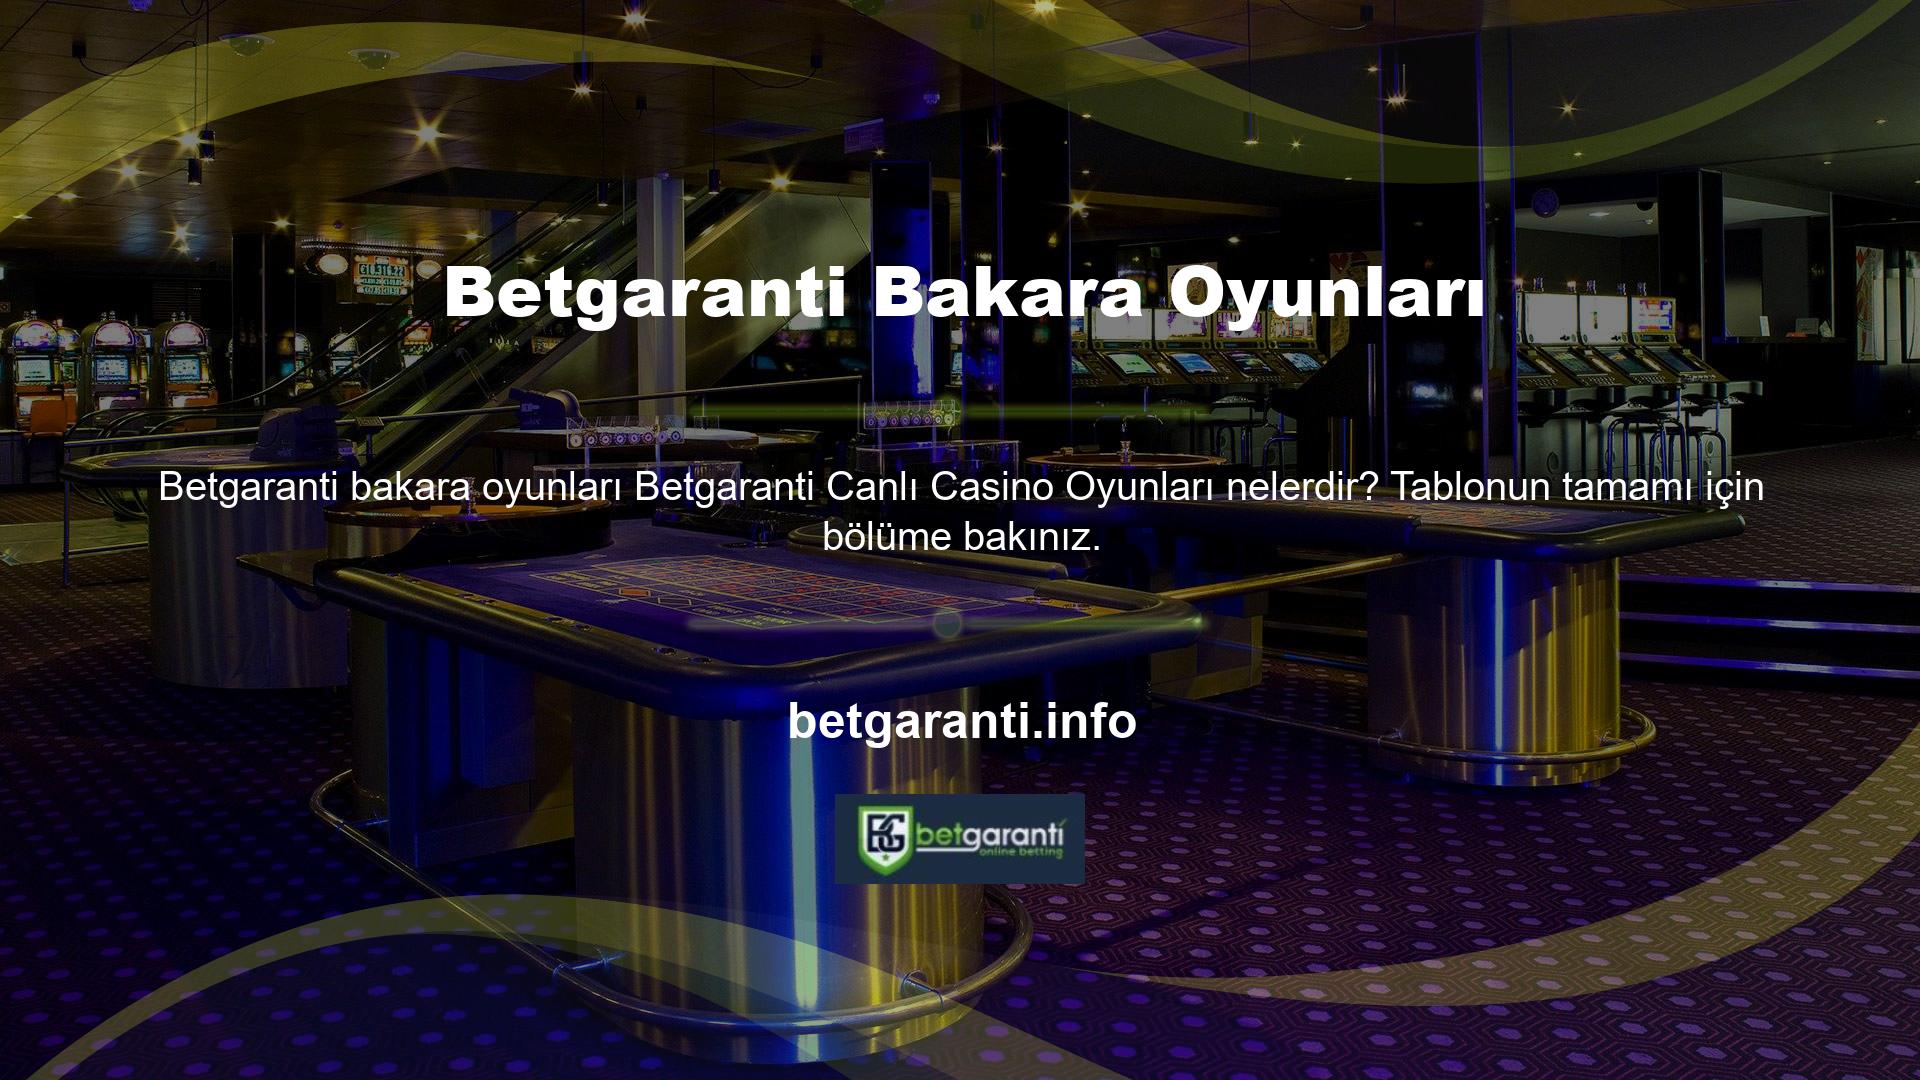 Betgaranti casino oyunları arasında Black Jack oyunları, bakara oyunları, rulet oyunları, poker oyunları ve rüya yakalayıcı oyunları bulunmaktadır